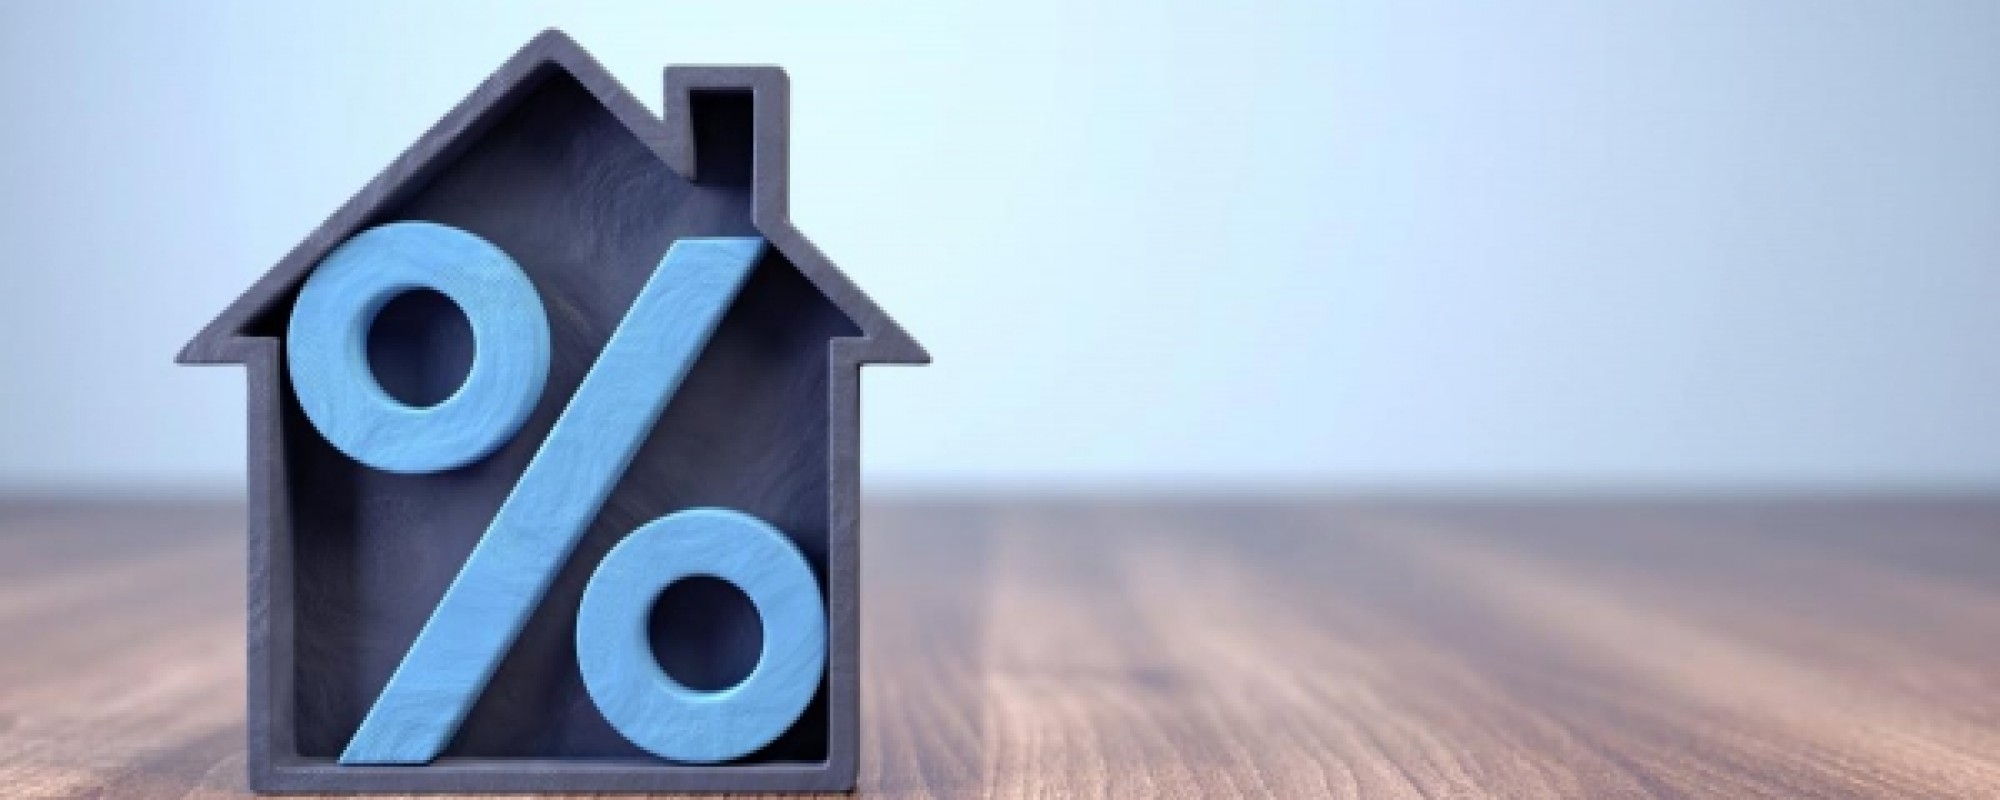 Hypotheekrente omhoog: wat betekent dat voor jou?